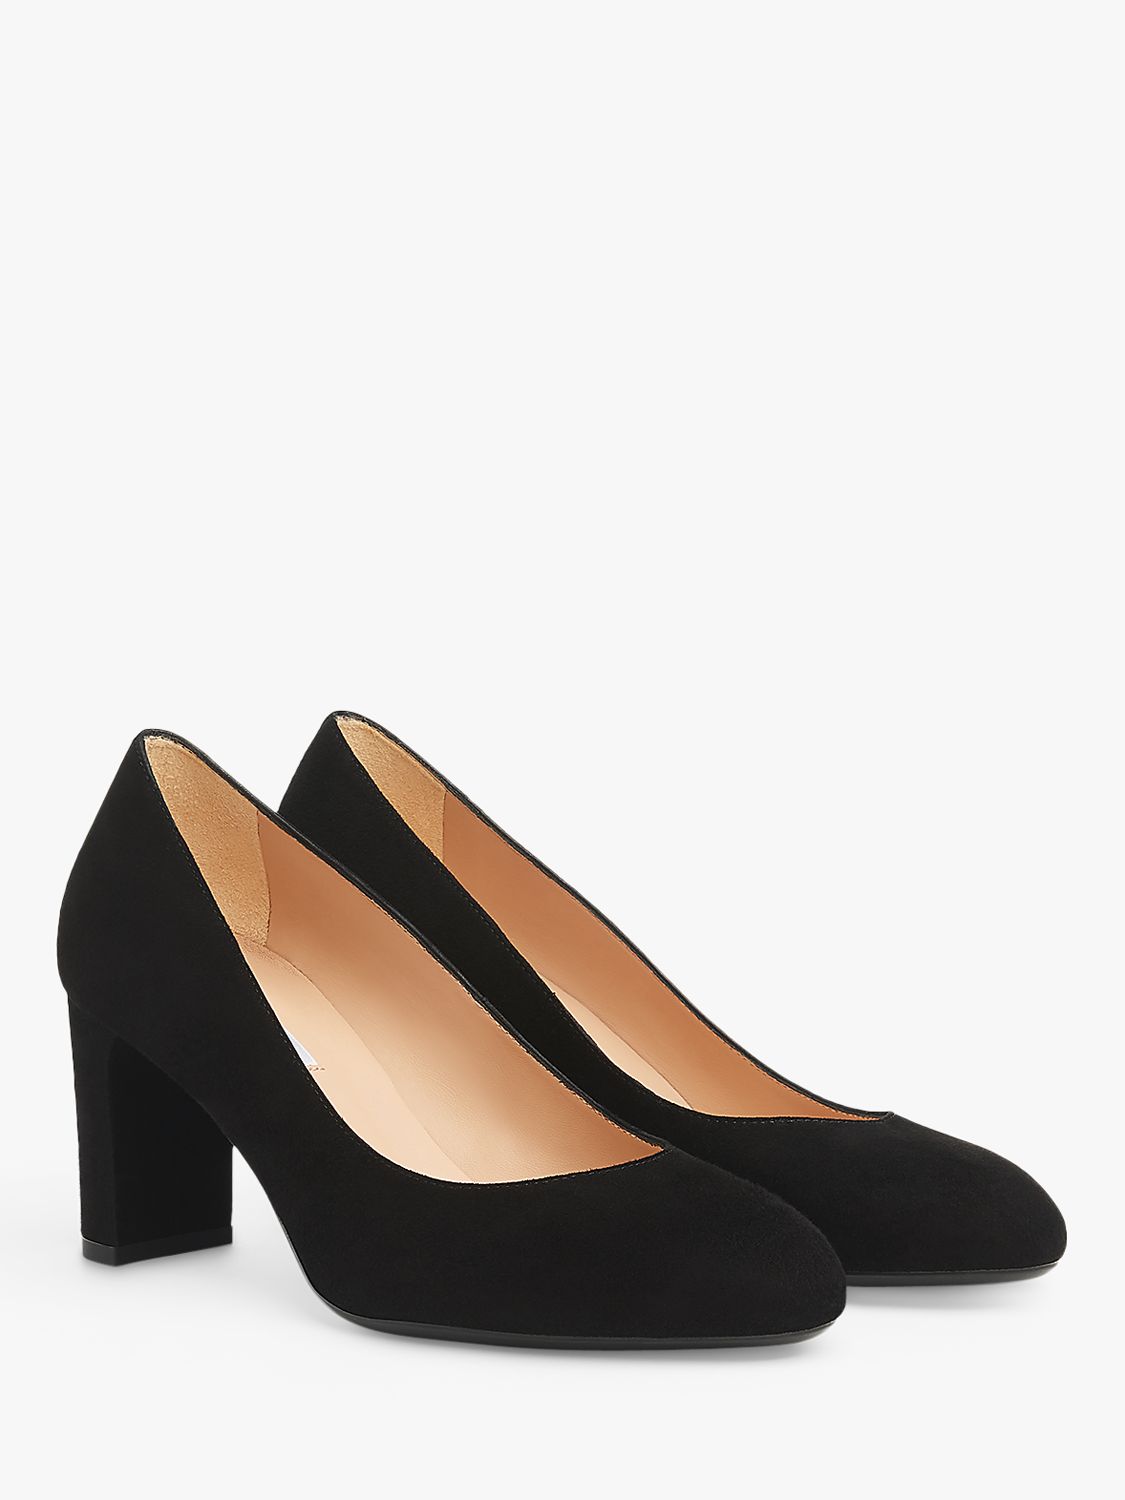 L.K.Bennett Winola Suede Court Shoes, Black, 2